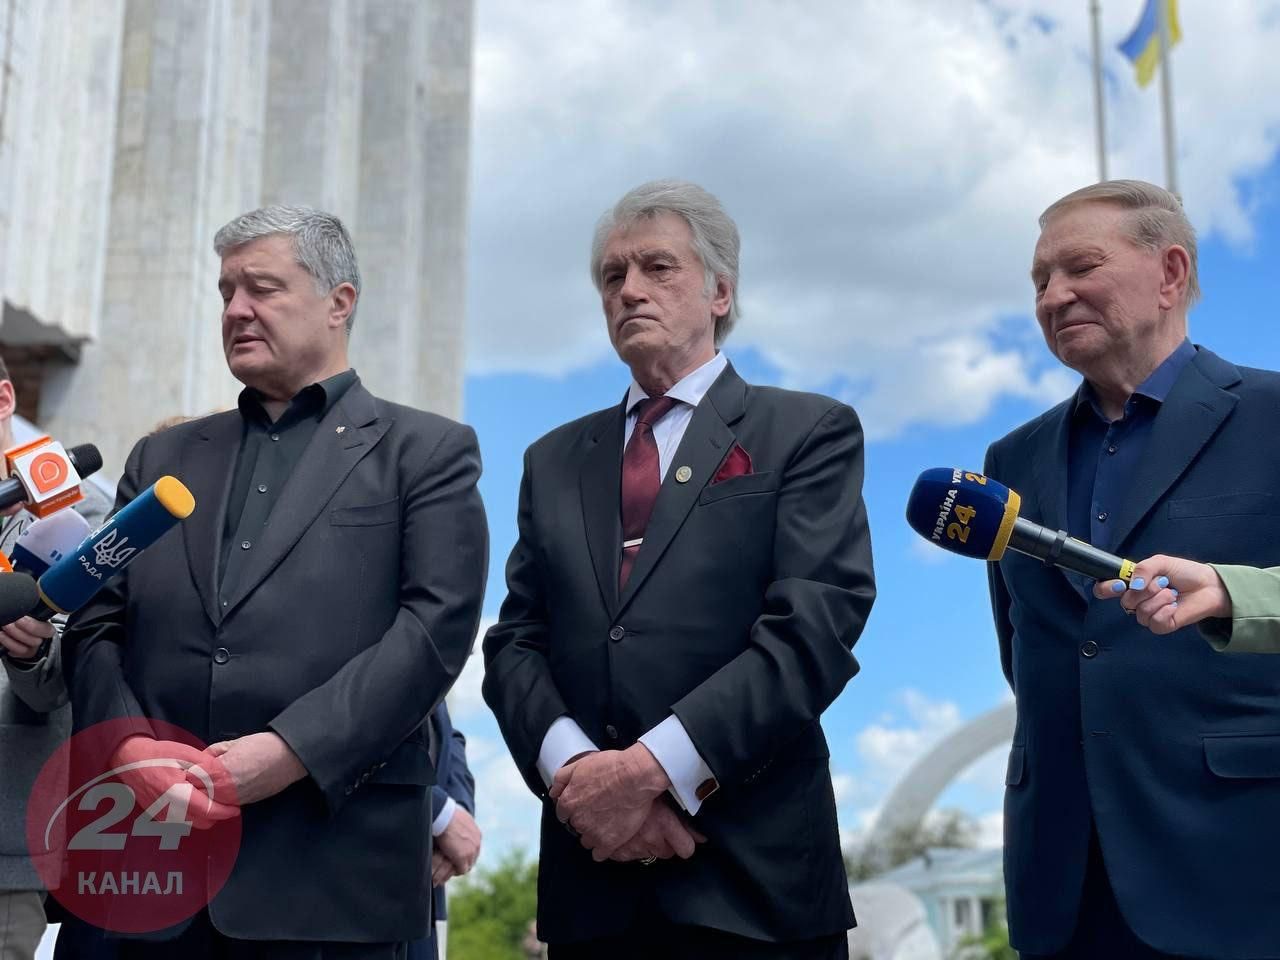 Кучма, Ющенко та Порошенко прийшли на церемонію прощання з Кравчуком: фото